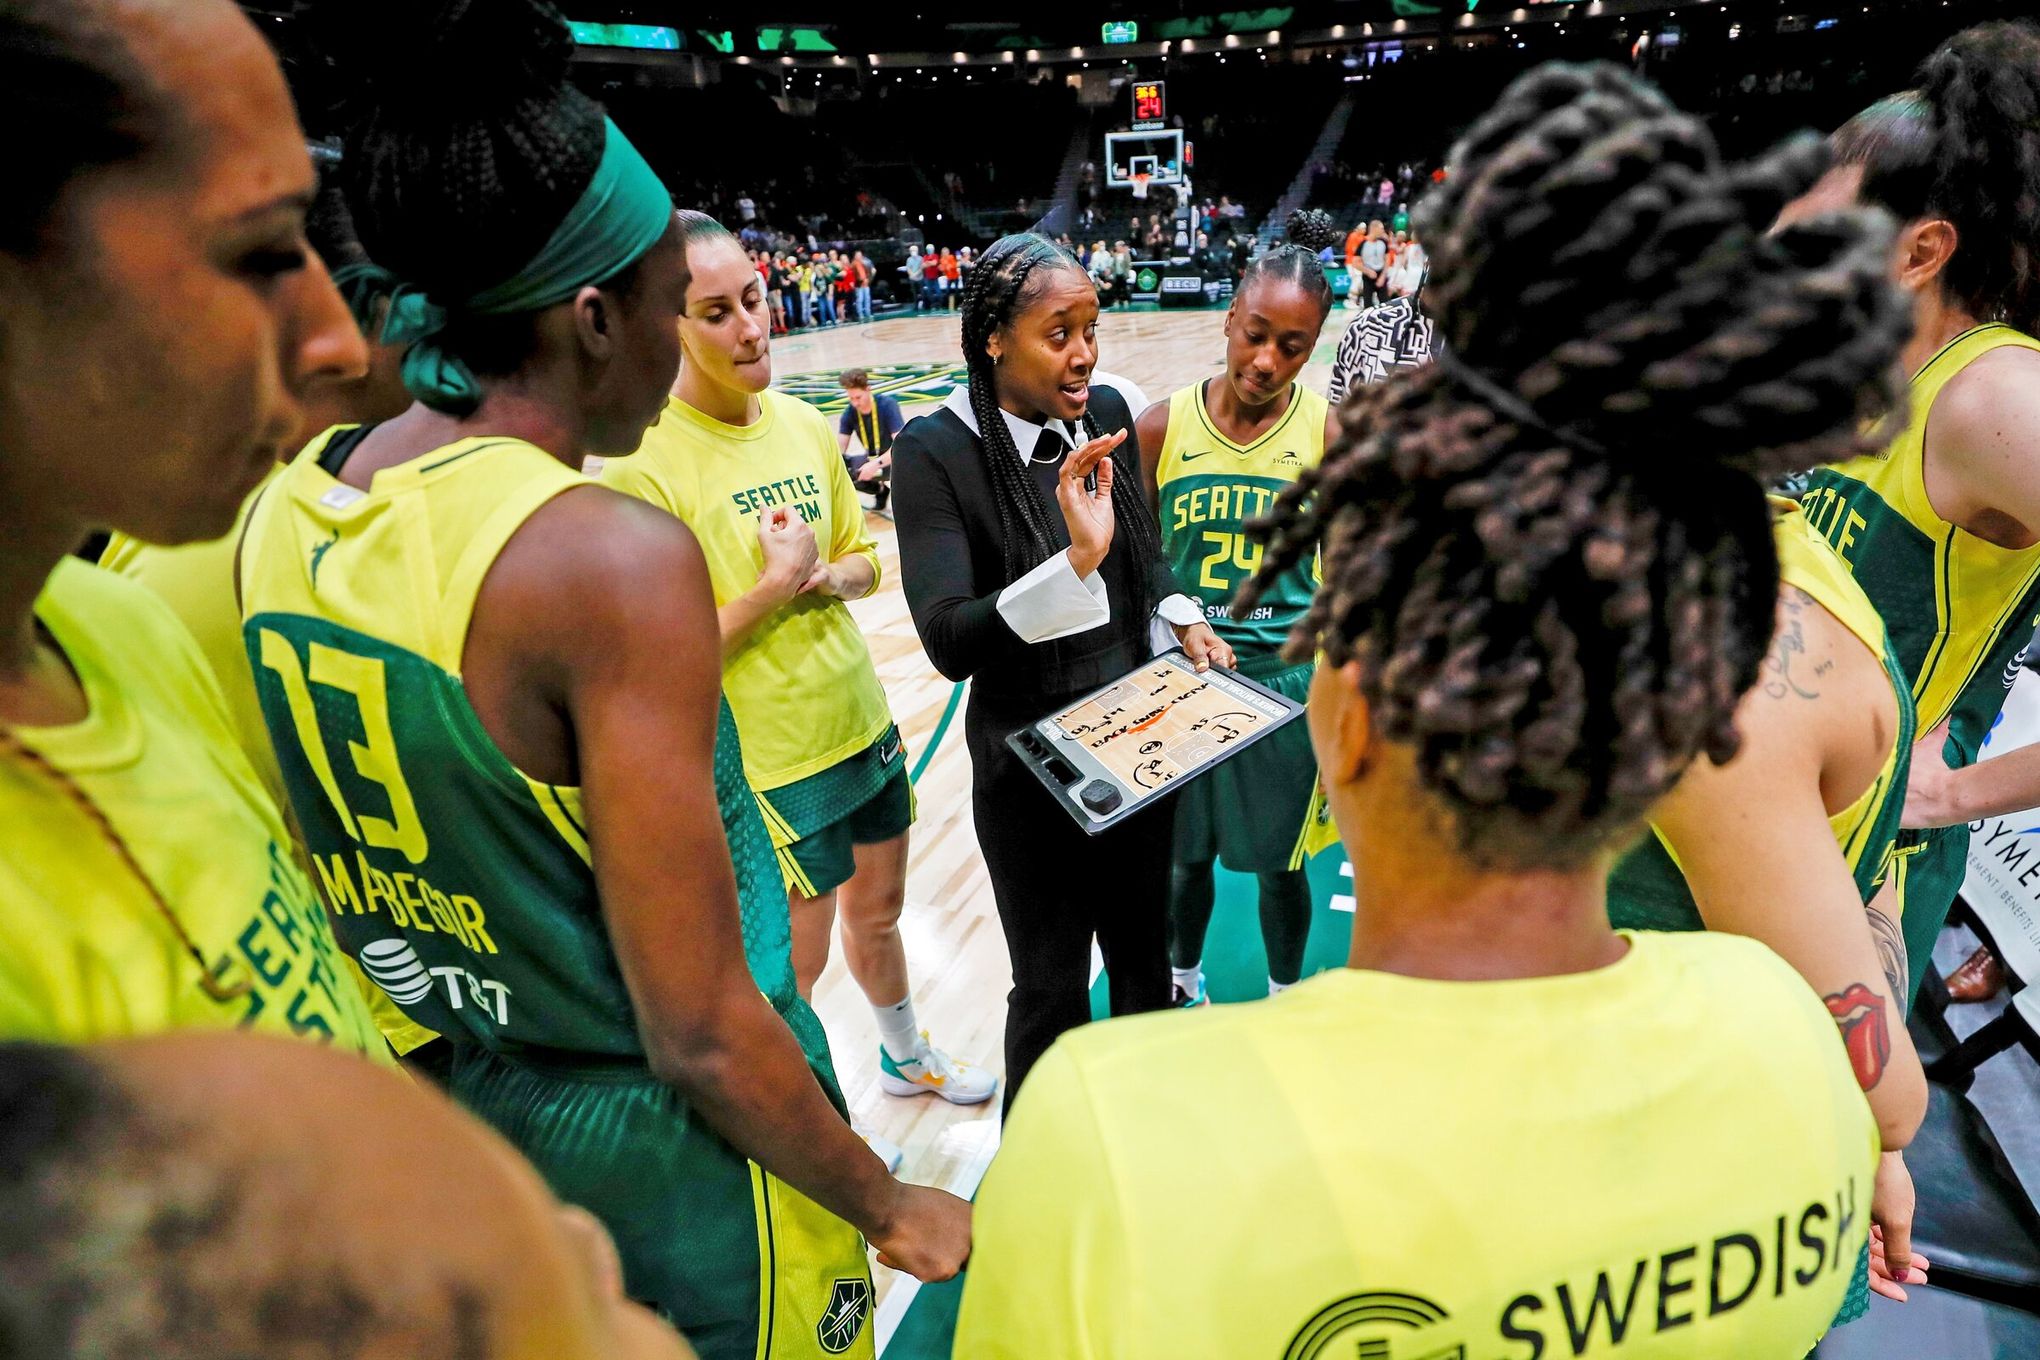 Breanna Stewart reveals mindset behind dominating WNBA Finals Game